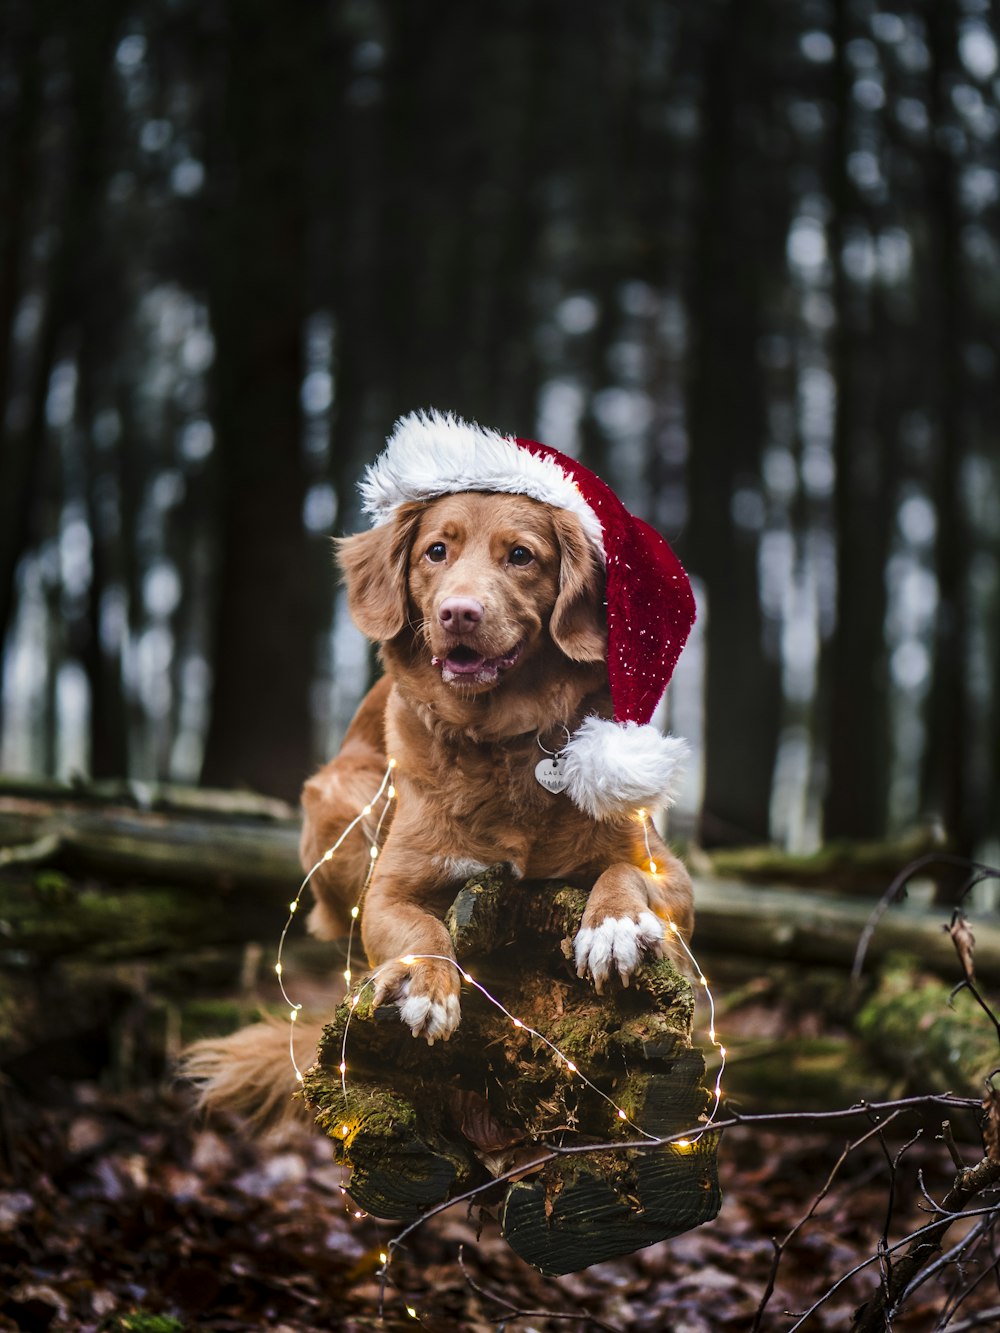 Brauner kurzhaariger Hund mit Weihnachtsmannmütze